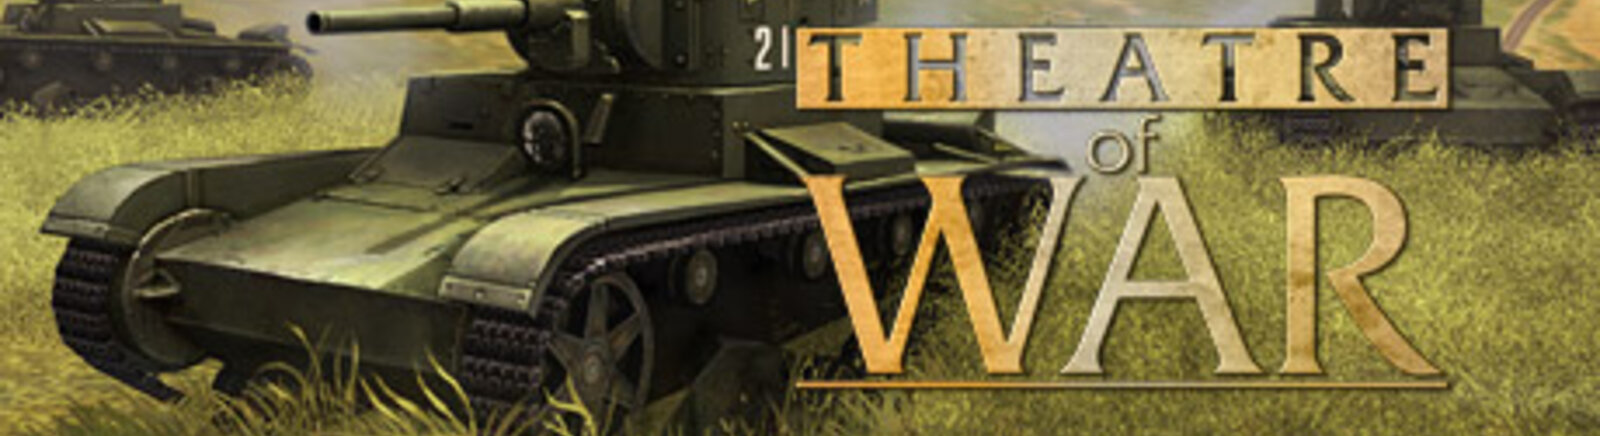 Дата выхода Вторая мировая (Theatre of War)  на PC в России и во всем мире